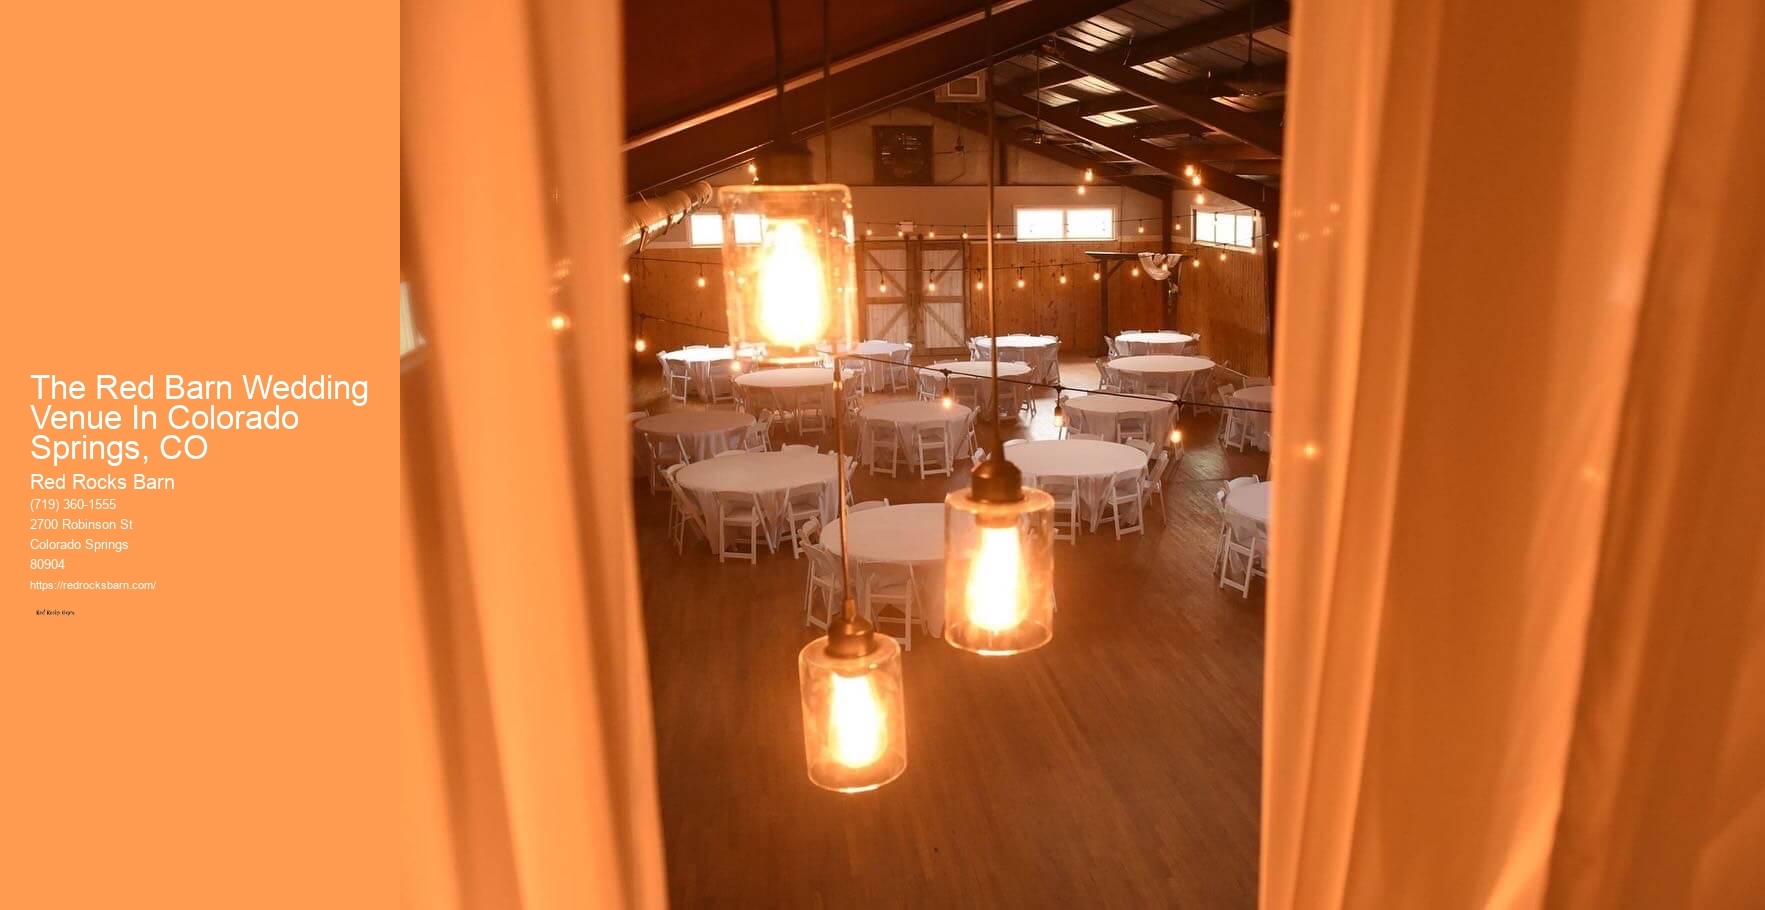 The Red Barn Wedding Venue In Colorado Springs, CO